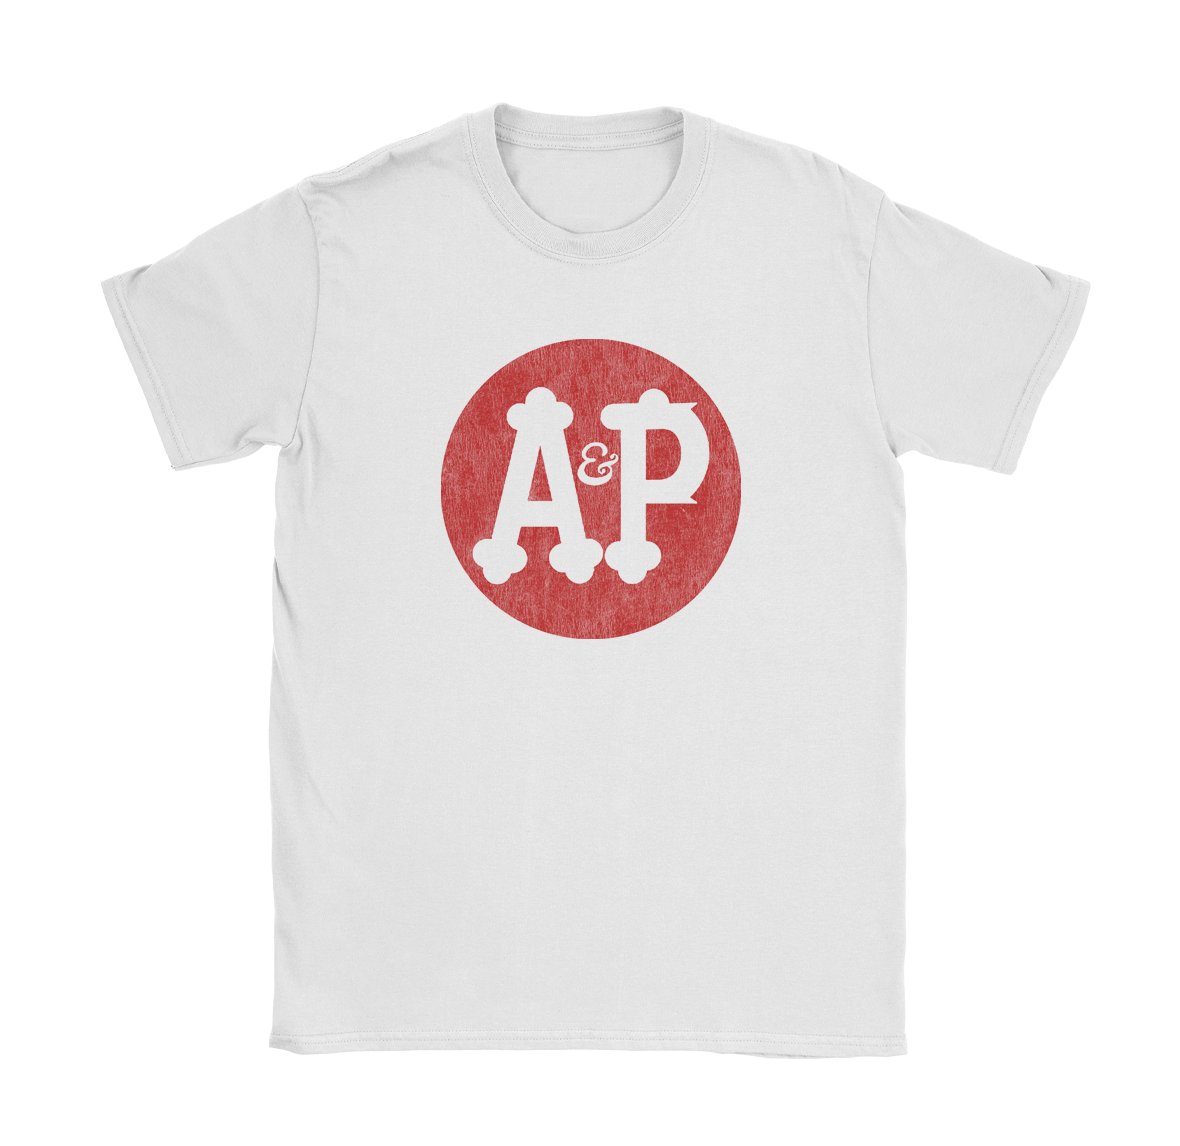 A&P Circle - Black Cat MFG - T-Shirt